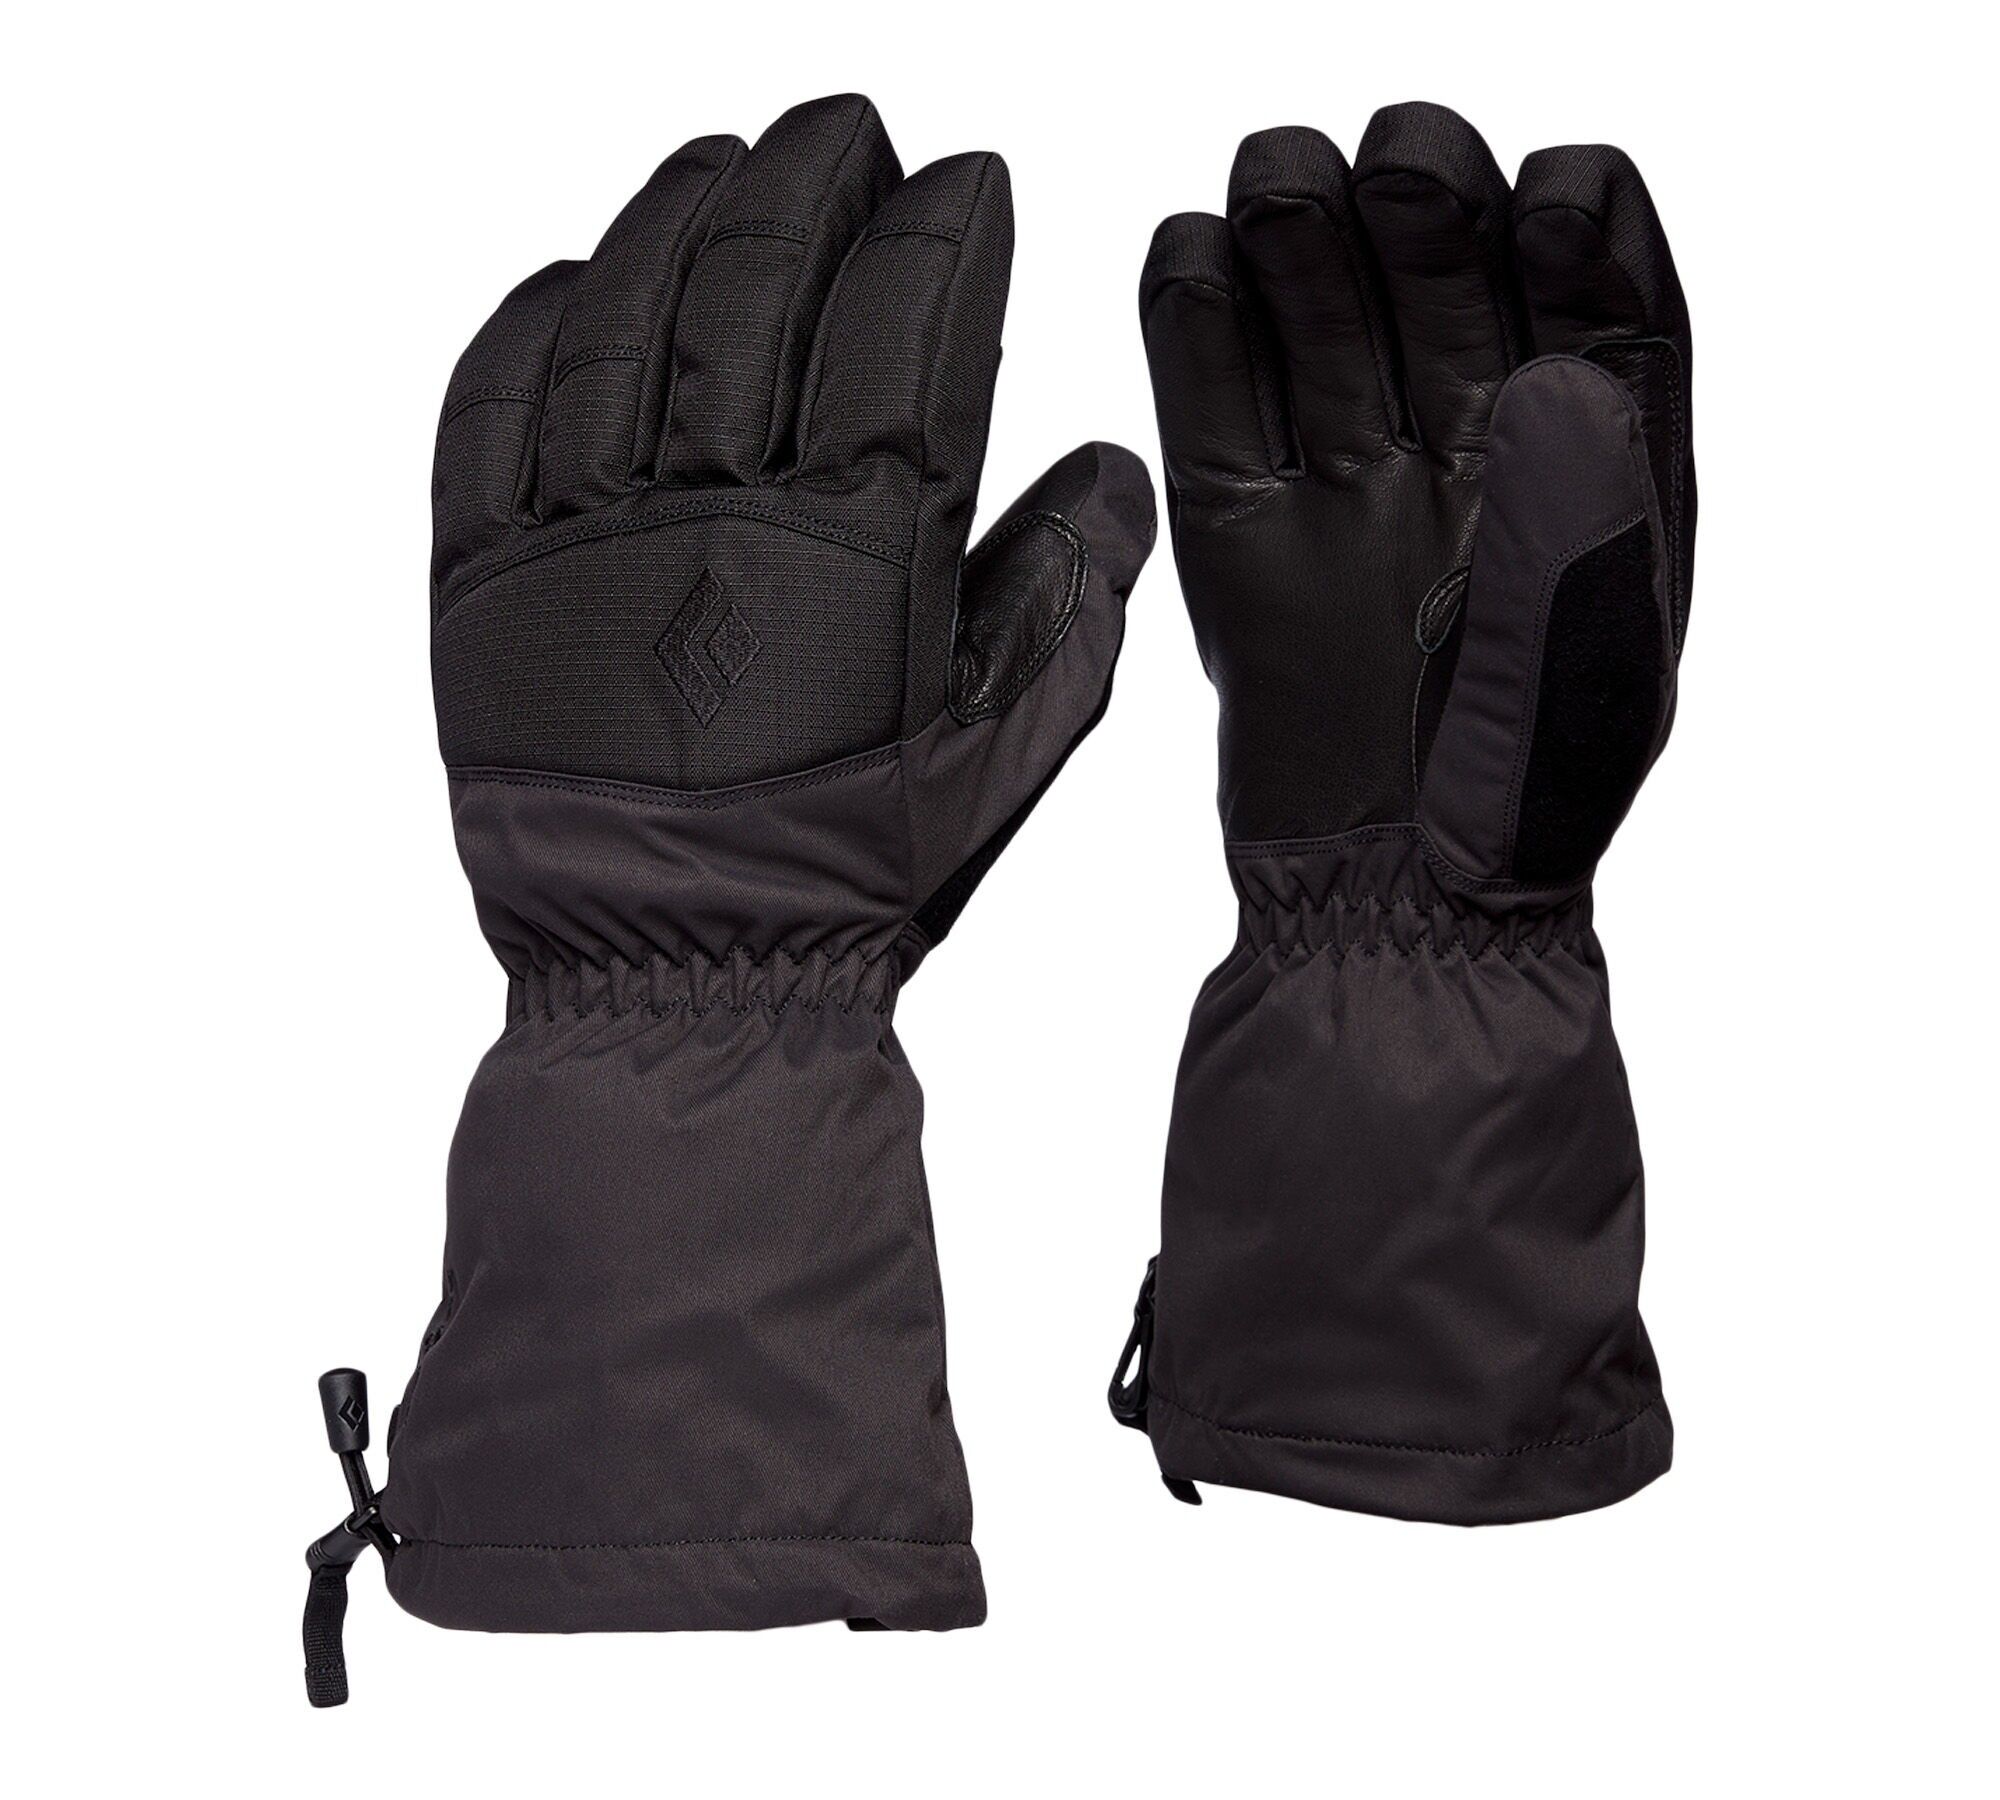 Black Diamond Recon Gloves - Ski gloves